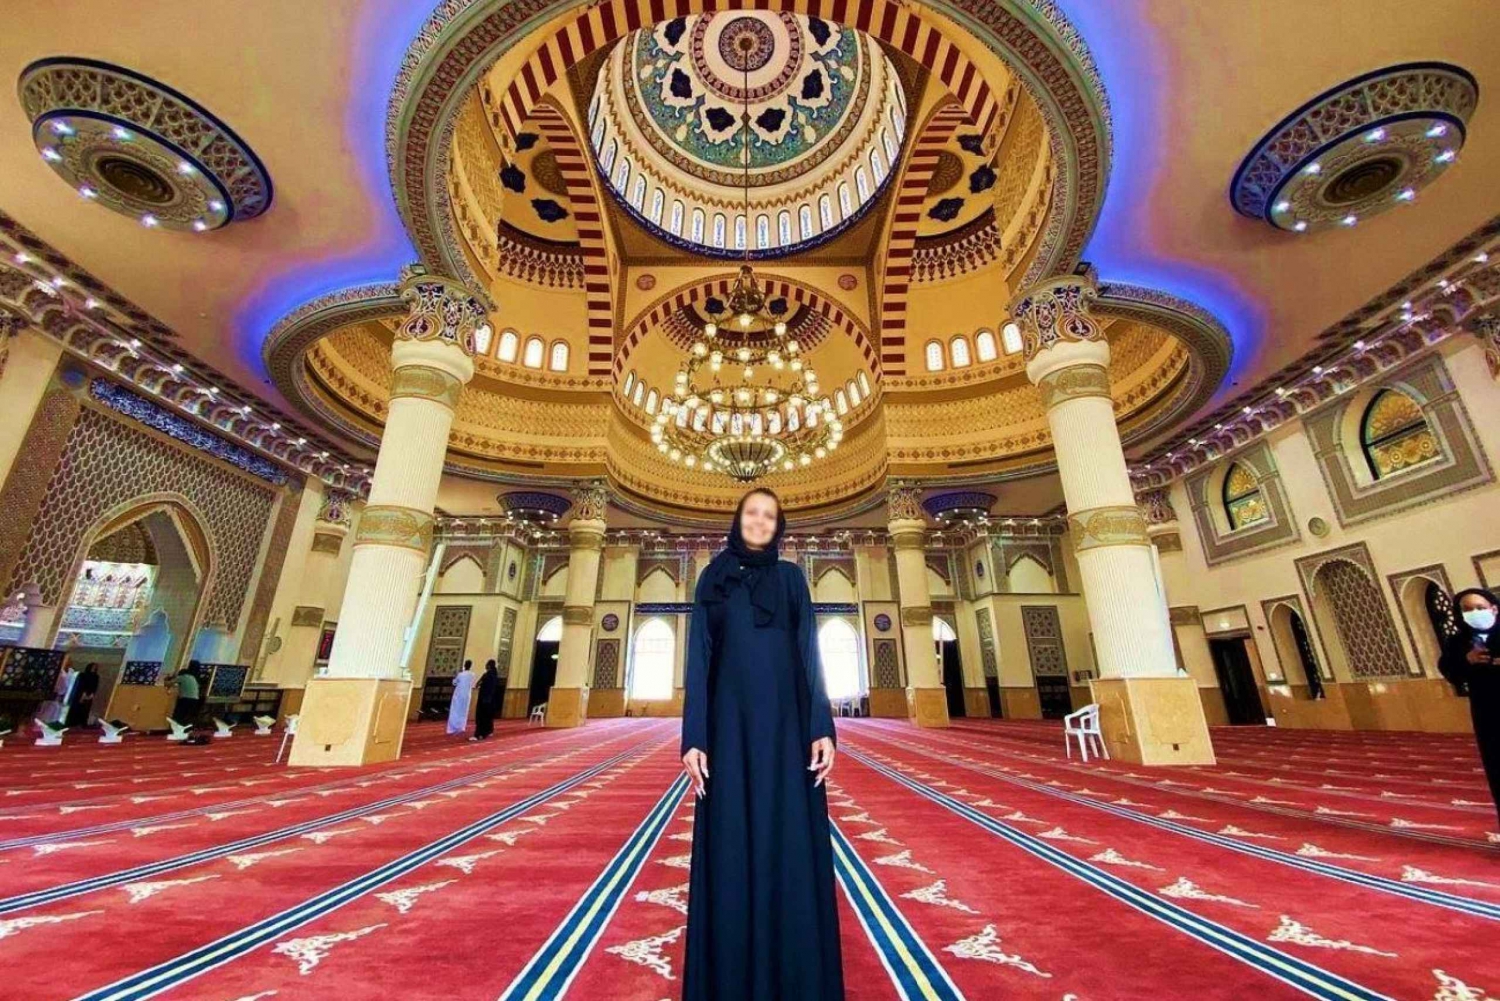 Dubai: Souker, båttur, ramme, inngang til Den blå moské og påkledning